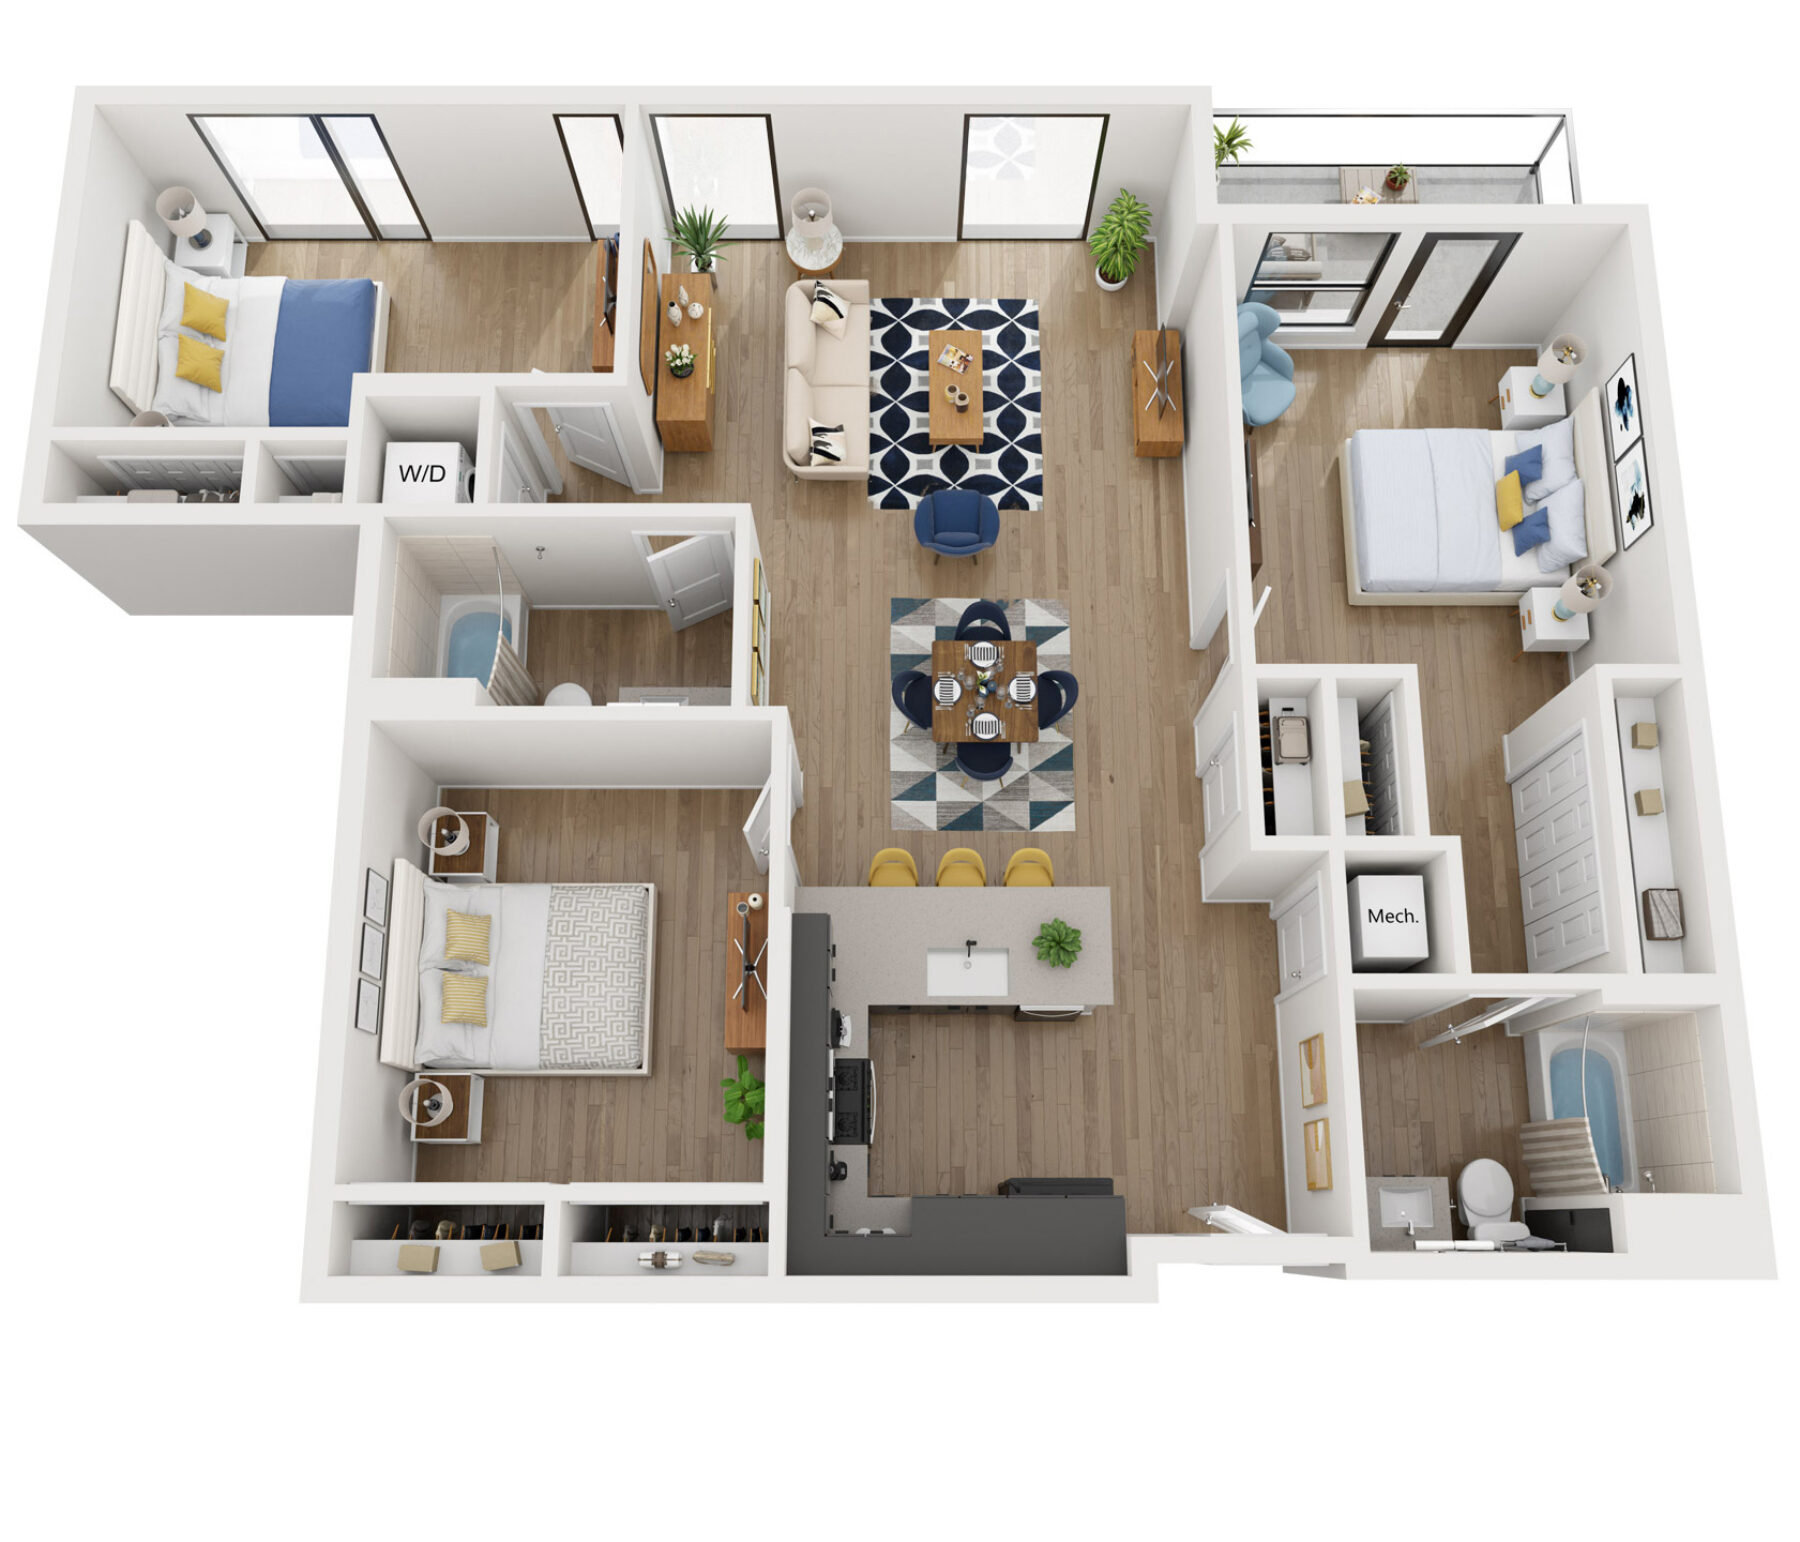 Plan Image: A1 - 1 Bedroom Minimalist